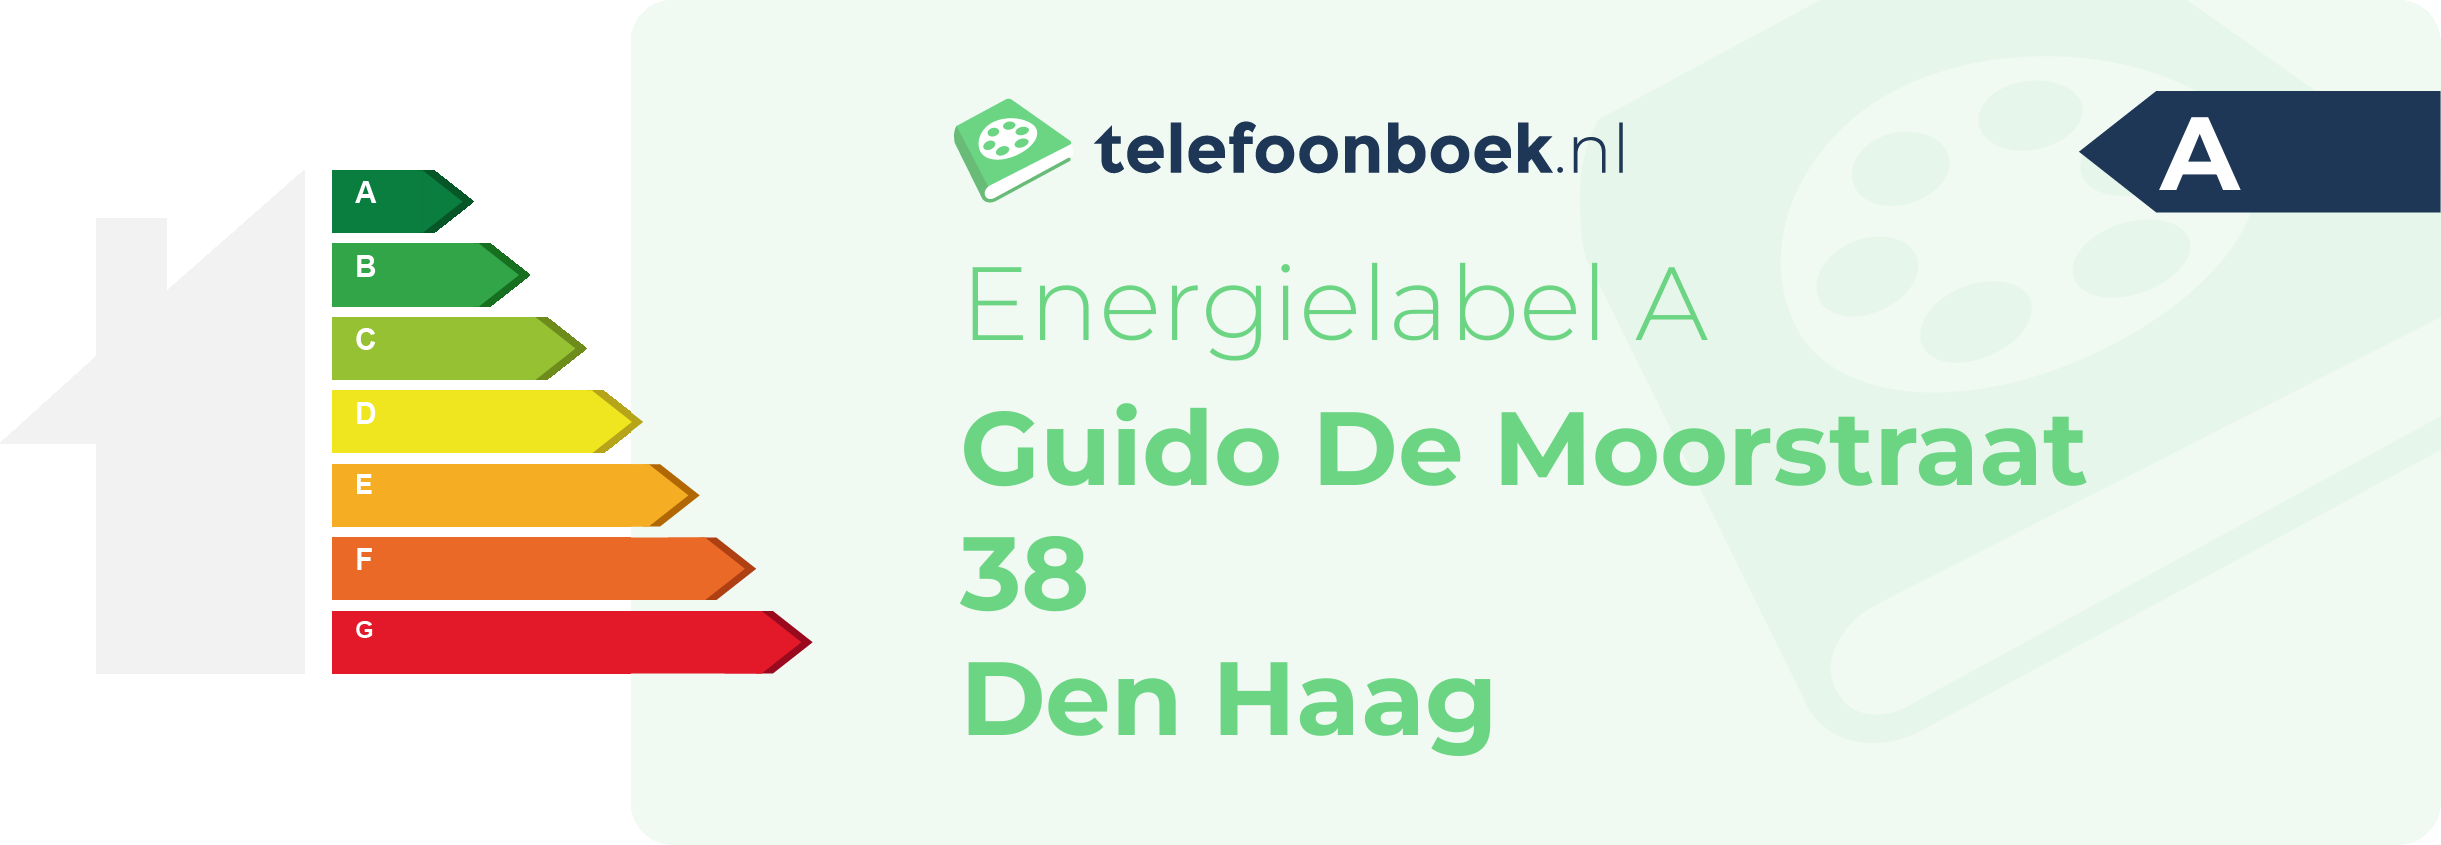 Energielabel Guido De Moorstraat 38 Den Haag